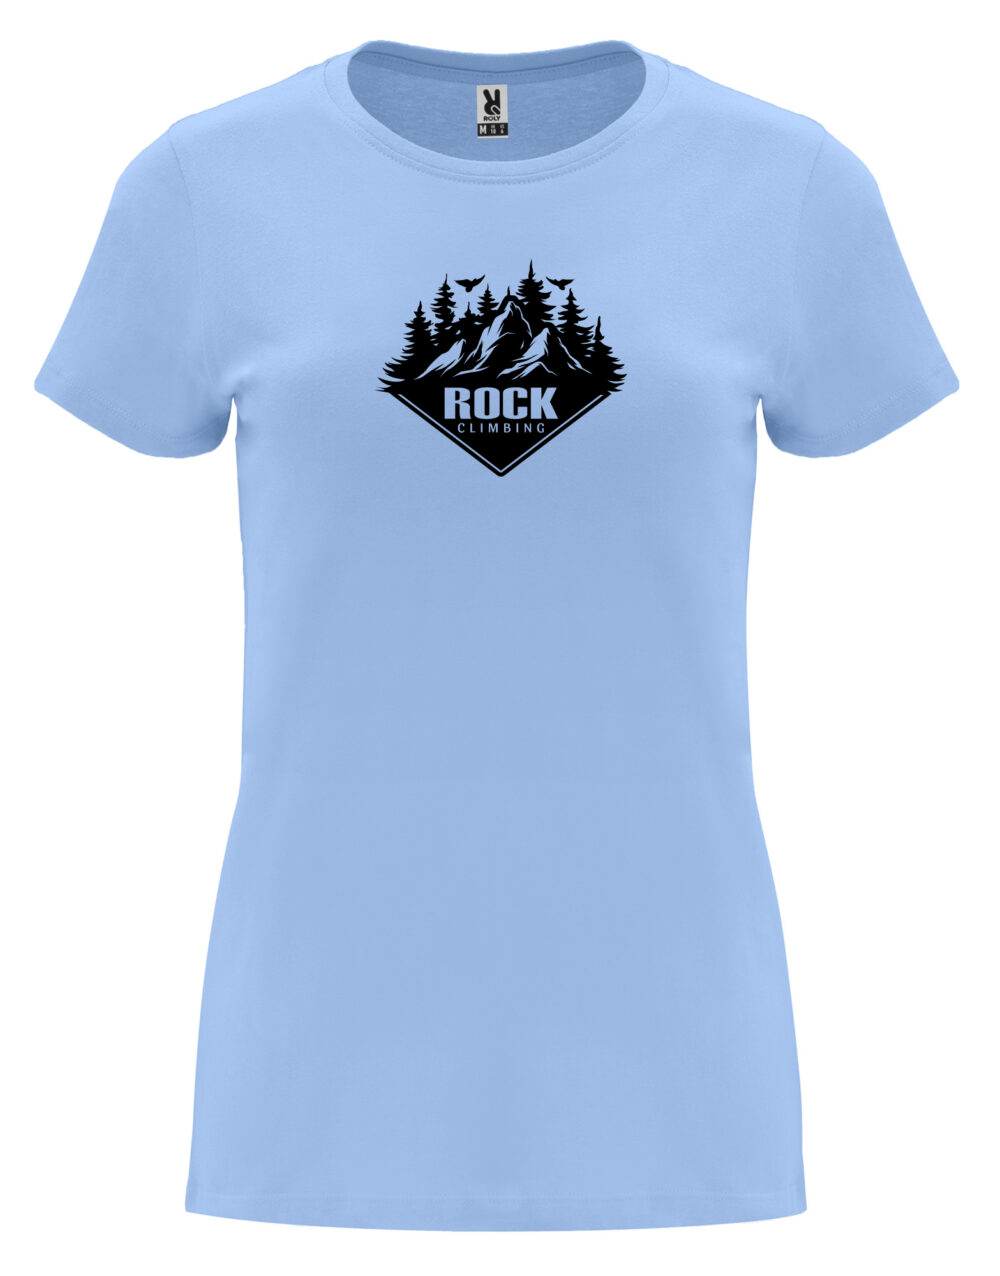 Dámské tričko s potiskem Rock climbing nebesky modrá